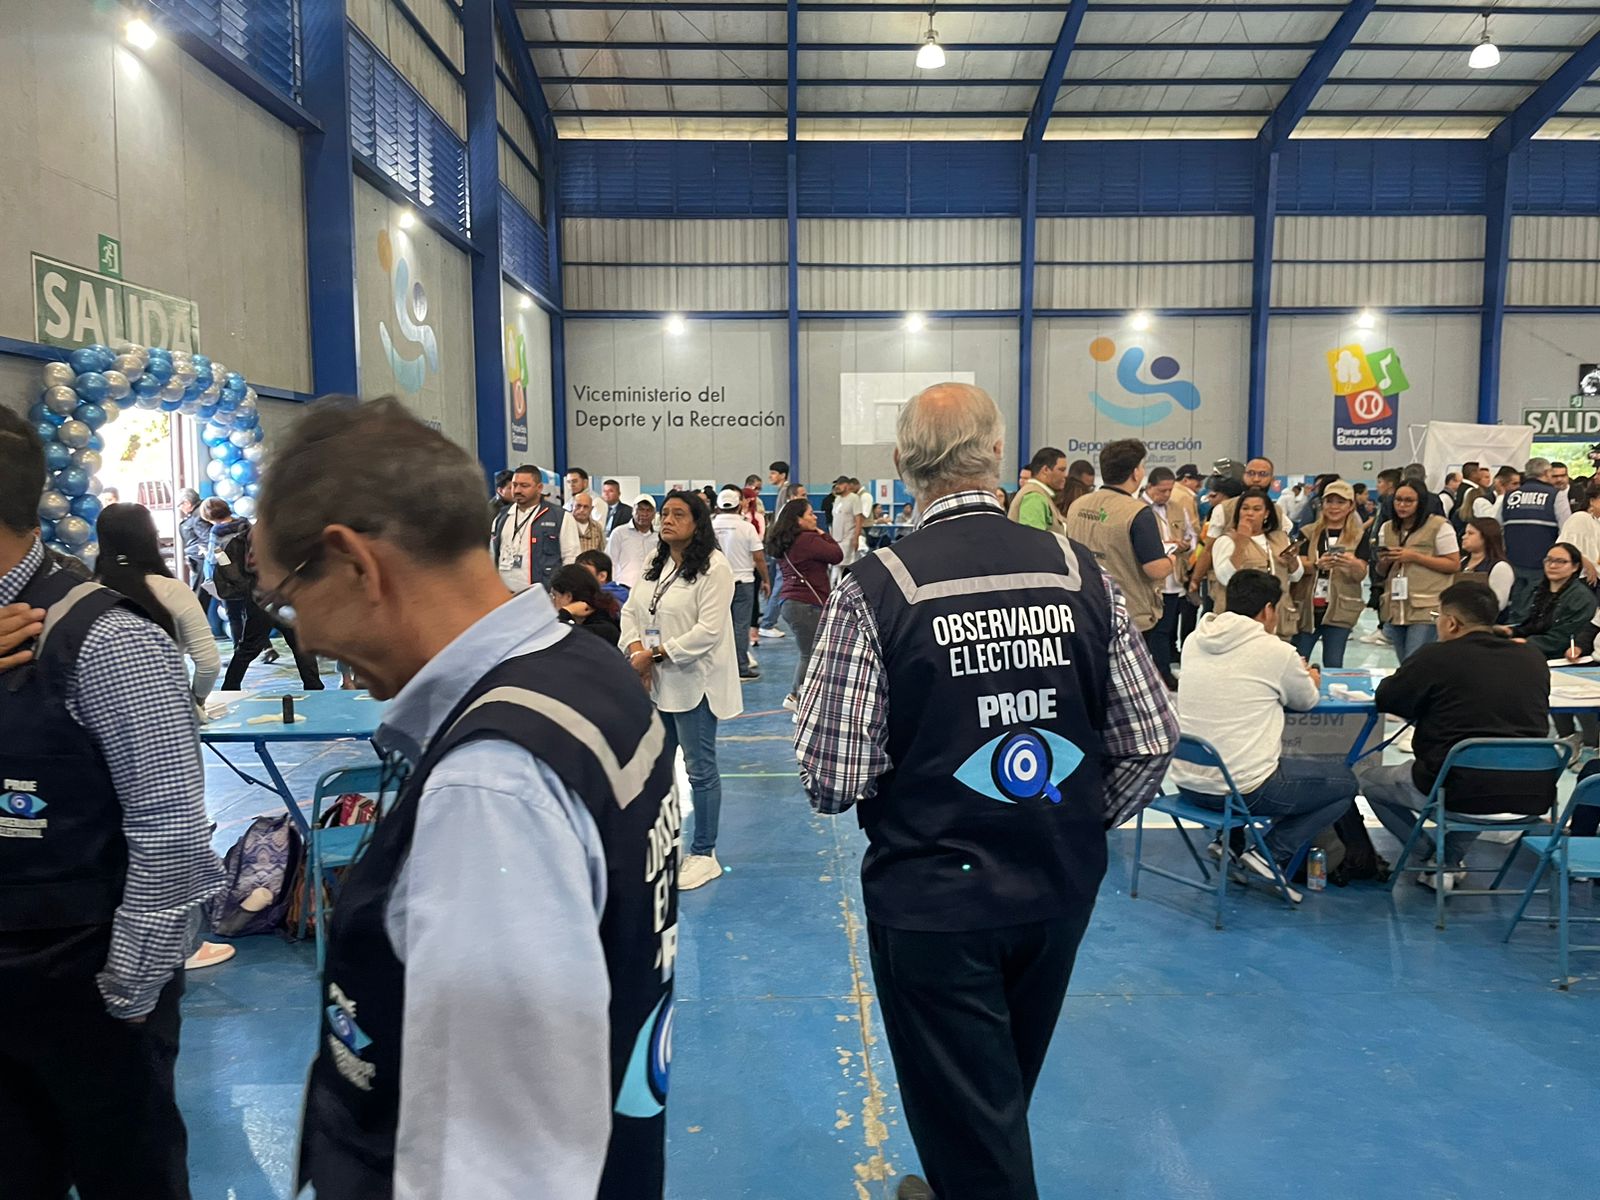 Grupos del sector privado organizado participaron y se pronunciaron sobre la segunda vuelta electoral en Guatemala- (Foto Prensa Libre: Cortesía Cacif)